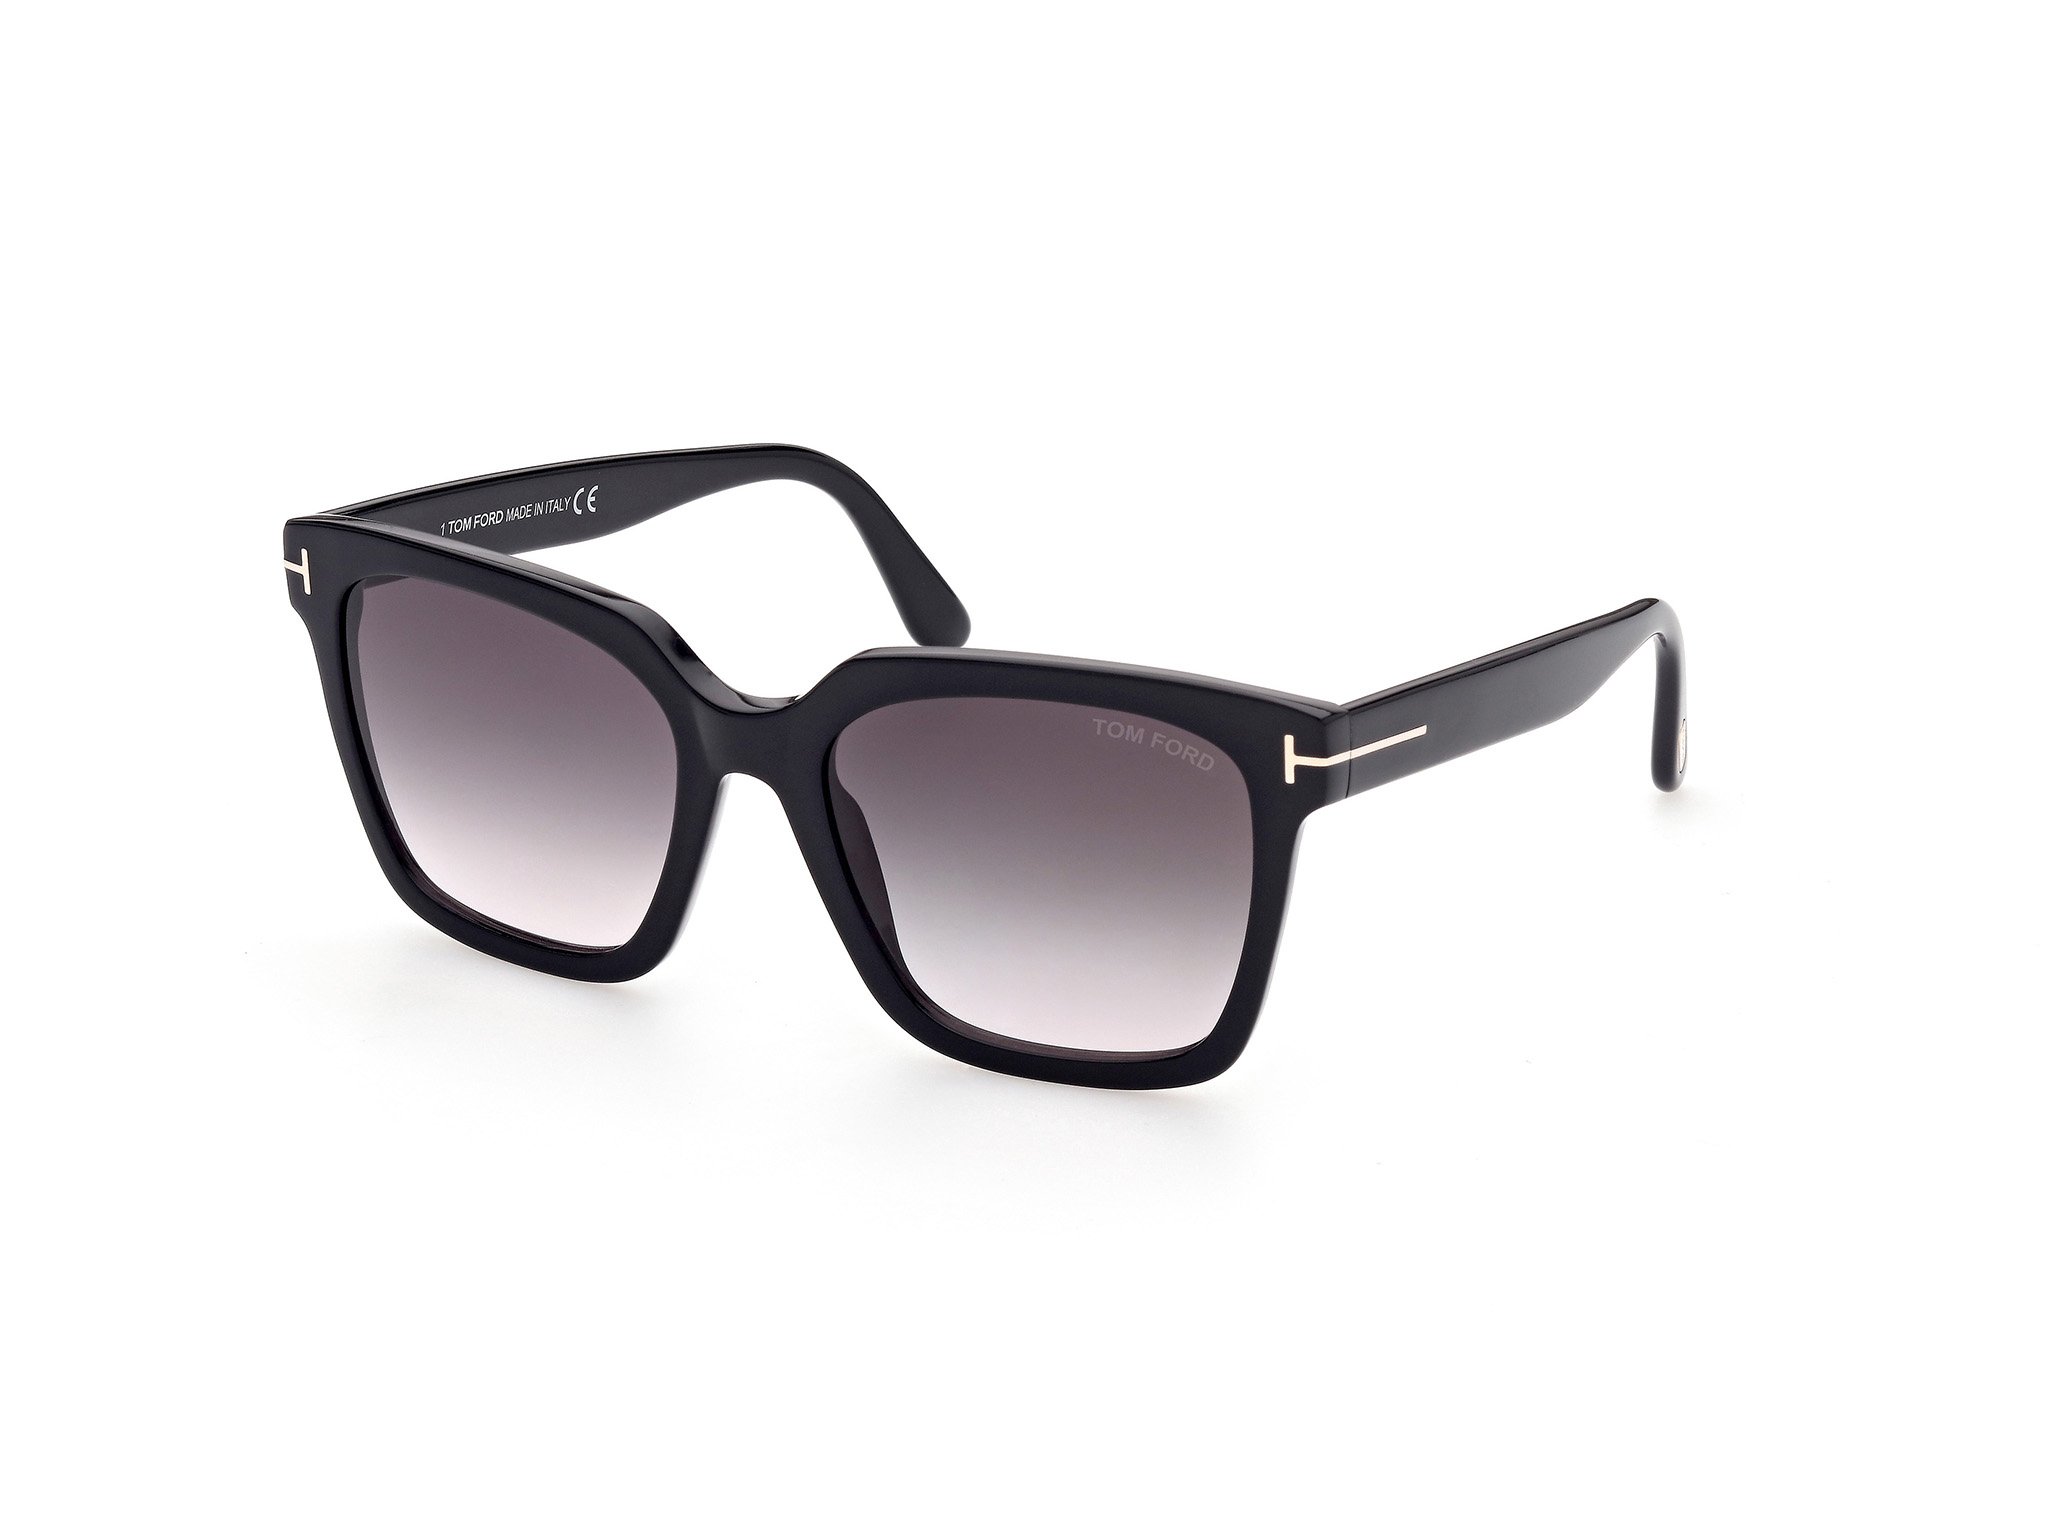 Das Bild zeigt die Sonnenbrille Selby FT0952 von der Marke Tom Ford in schwarz